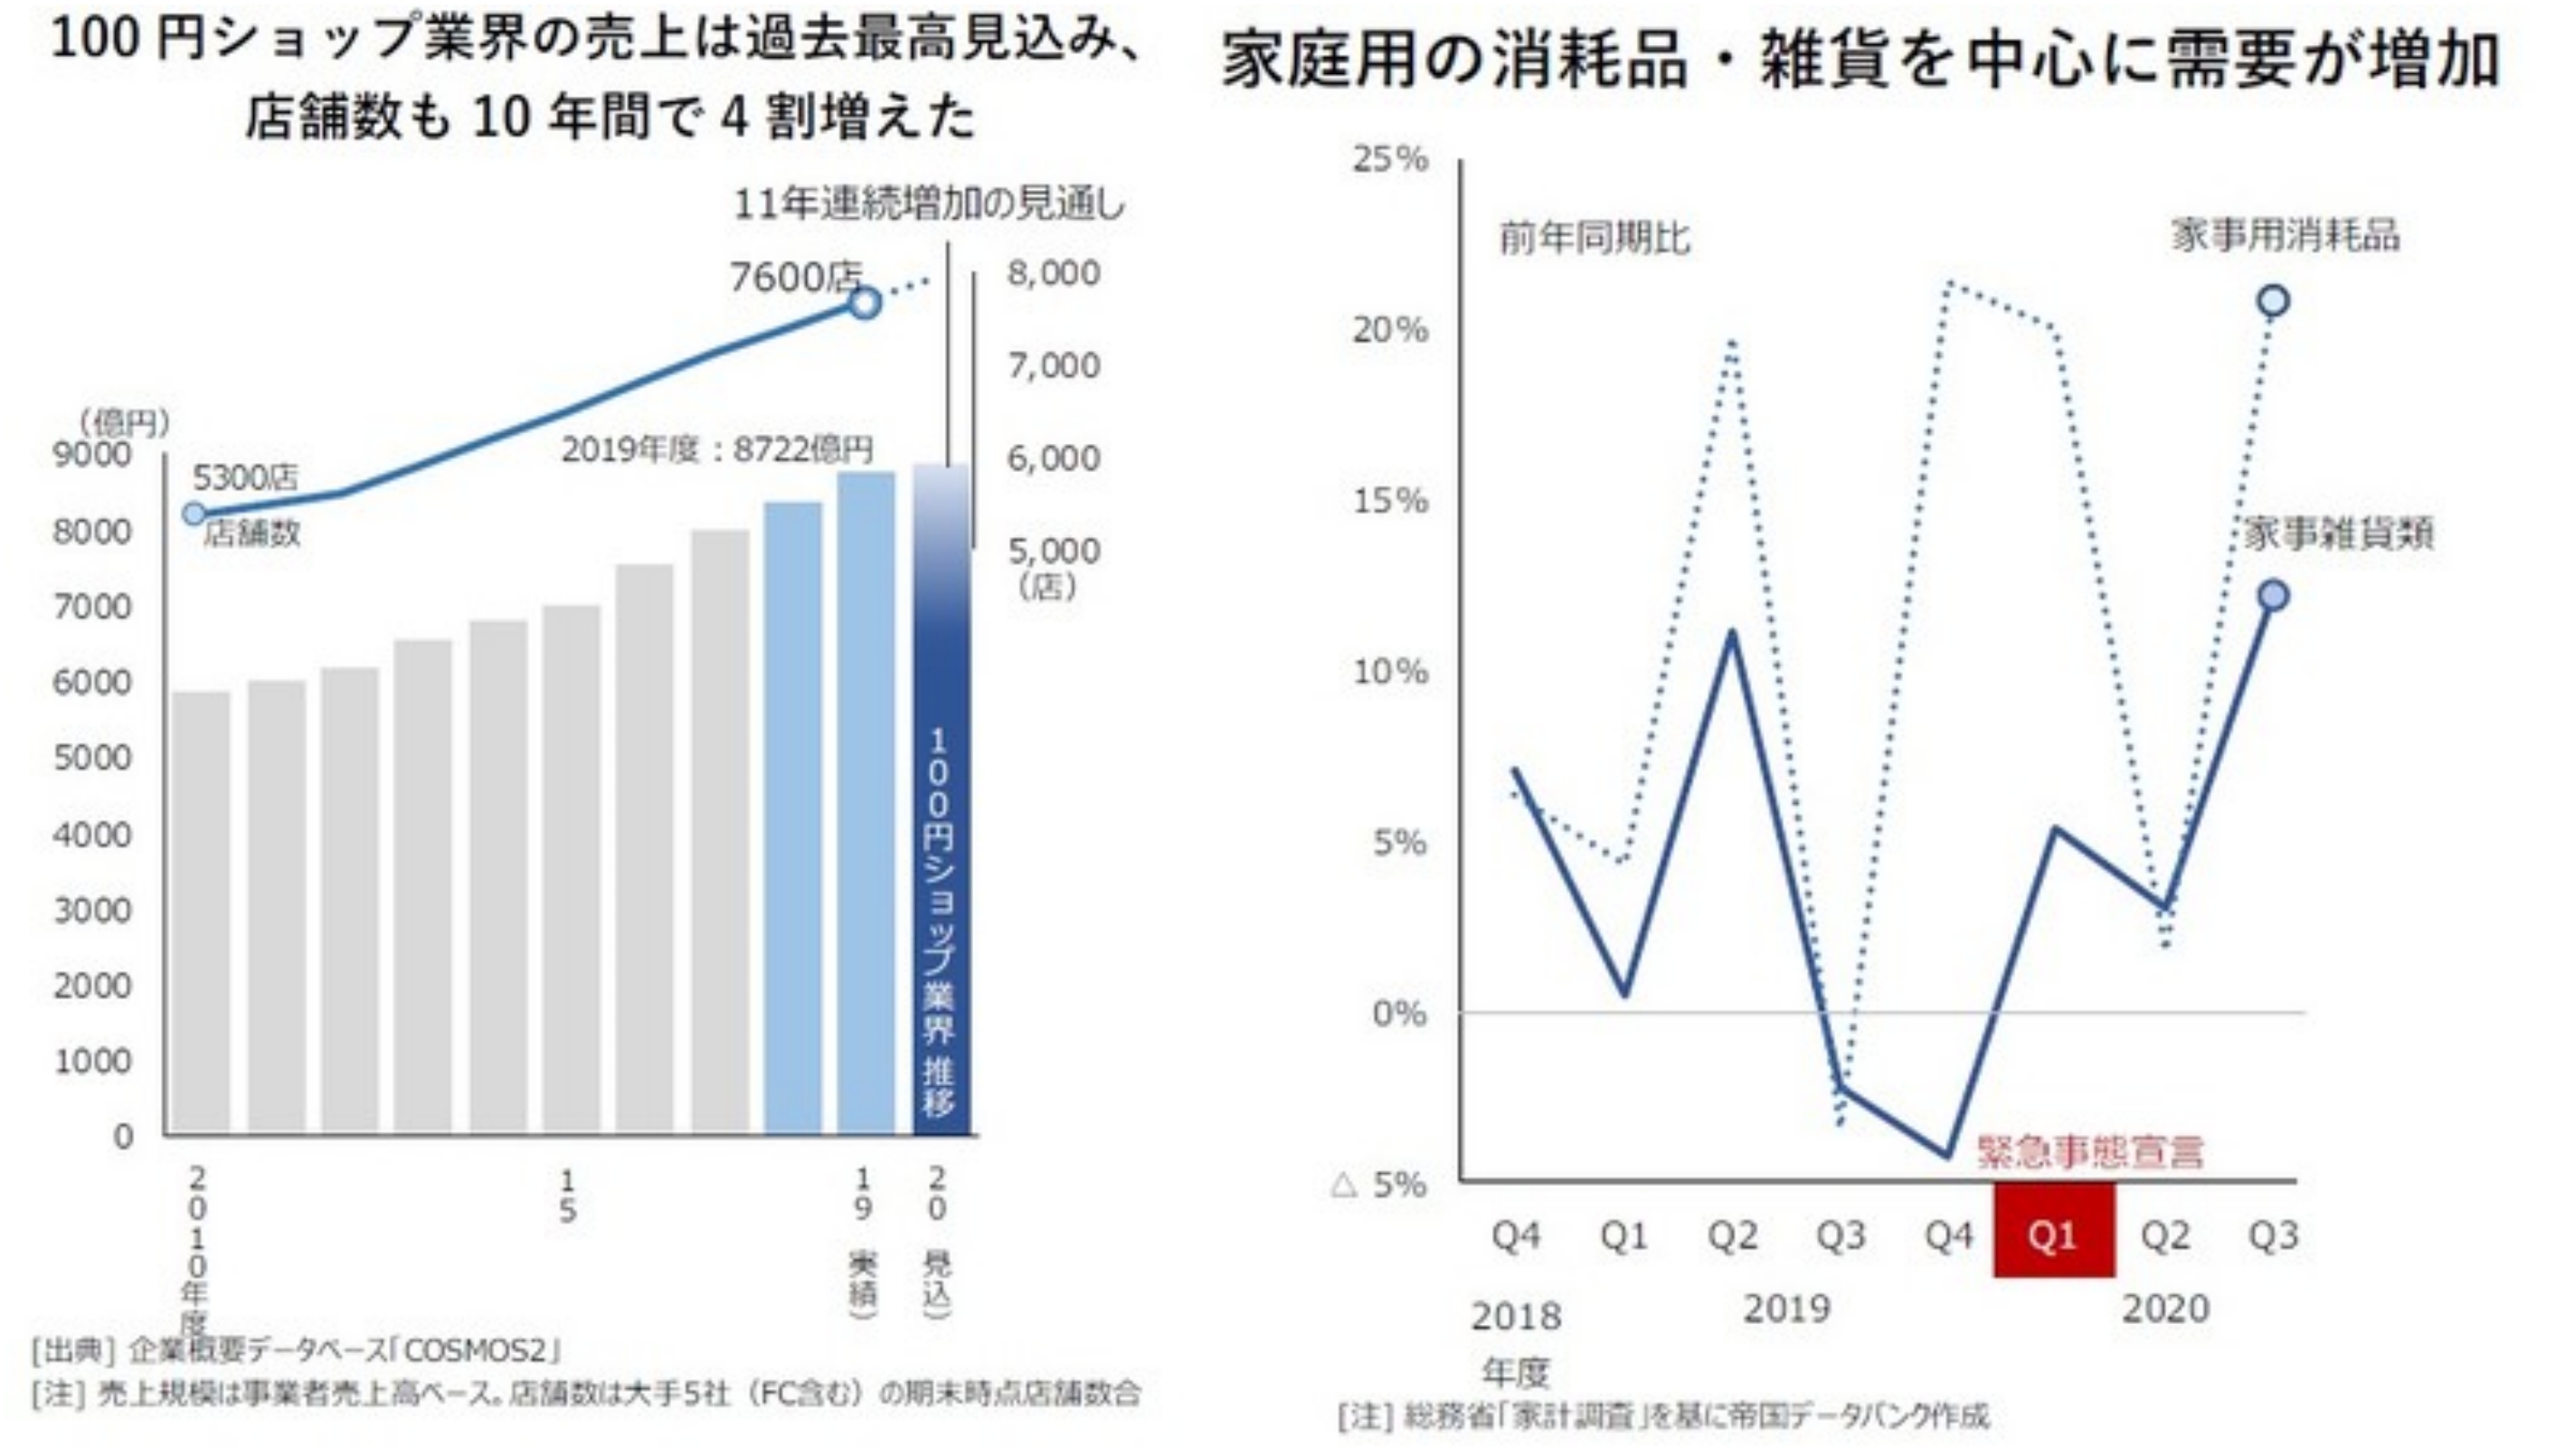 백엔 숍 시장이 점점 성장하고 있는 그래프.(左) 이는 코로나 이후 가정용 소모품과 잡화의 수요가 늘어남에 의한 결과이기도 해요.(右)